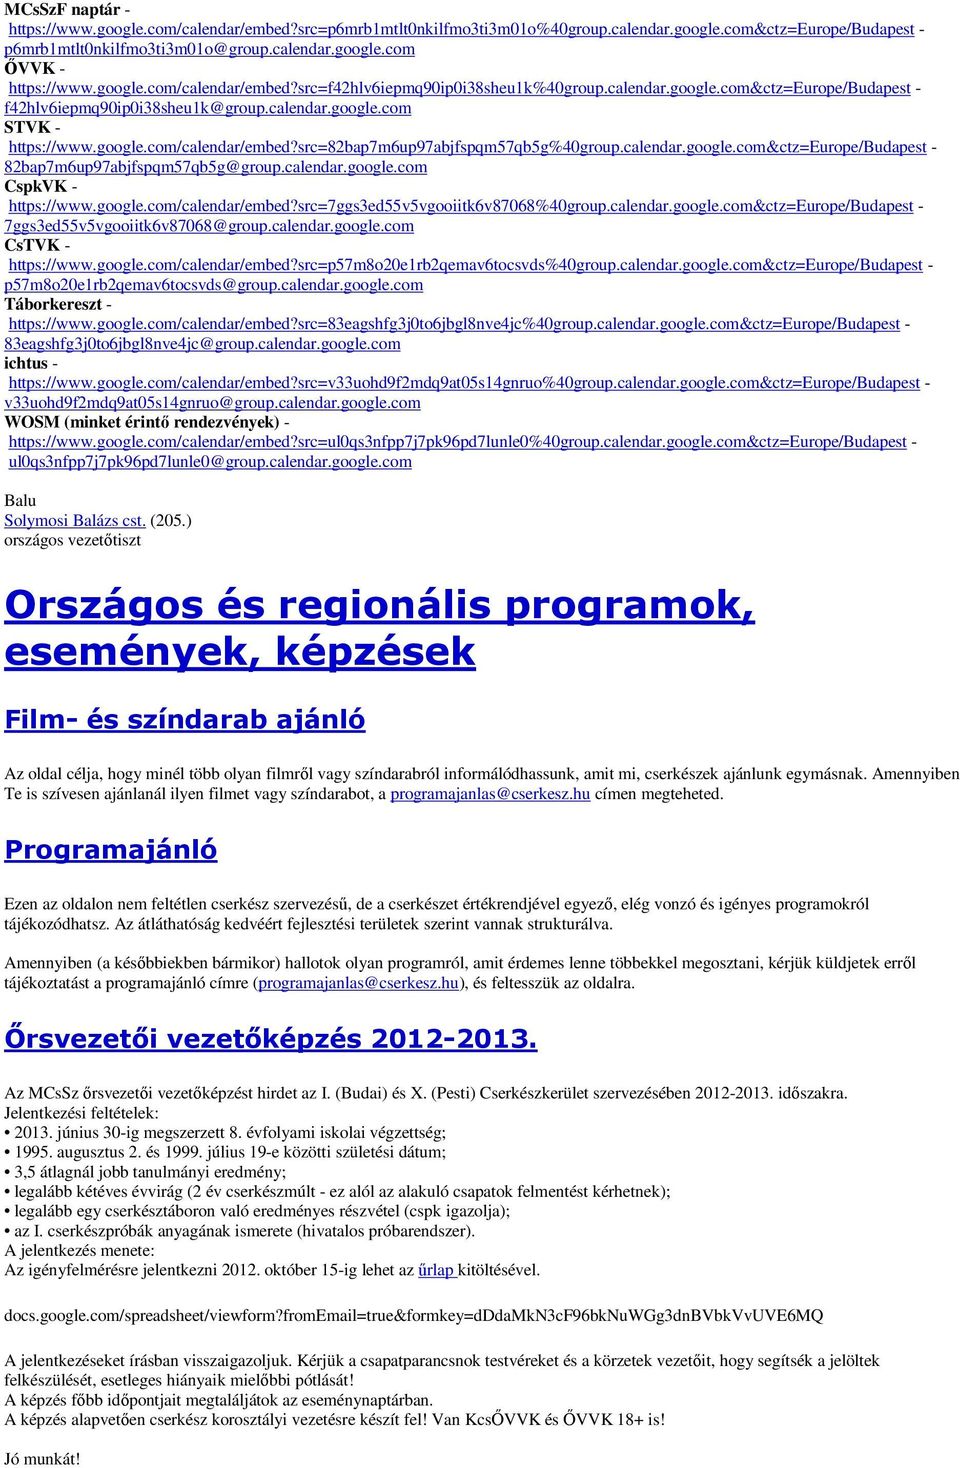 calendar.google.com&ctz=europe/budapest - 82bap7m6up97abjfspqm57qb5g@group.calendar.google.com CspkVK - https://www.google.com/calendar/embed?src=7ggs3ed55v5vgooiitk6v87068%40group.calendar.google.com&ctz=europe/budapest - 7ggs3ed55v5vgooiitk6v87068@group.